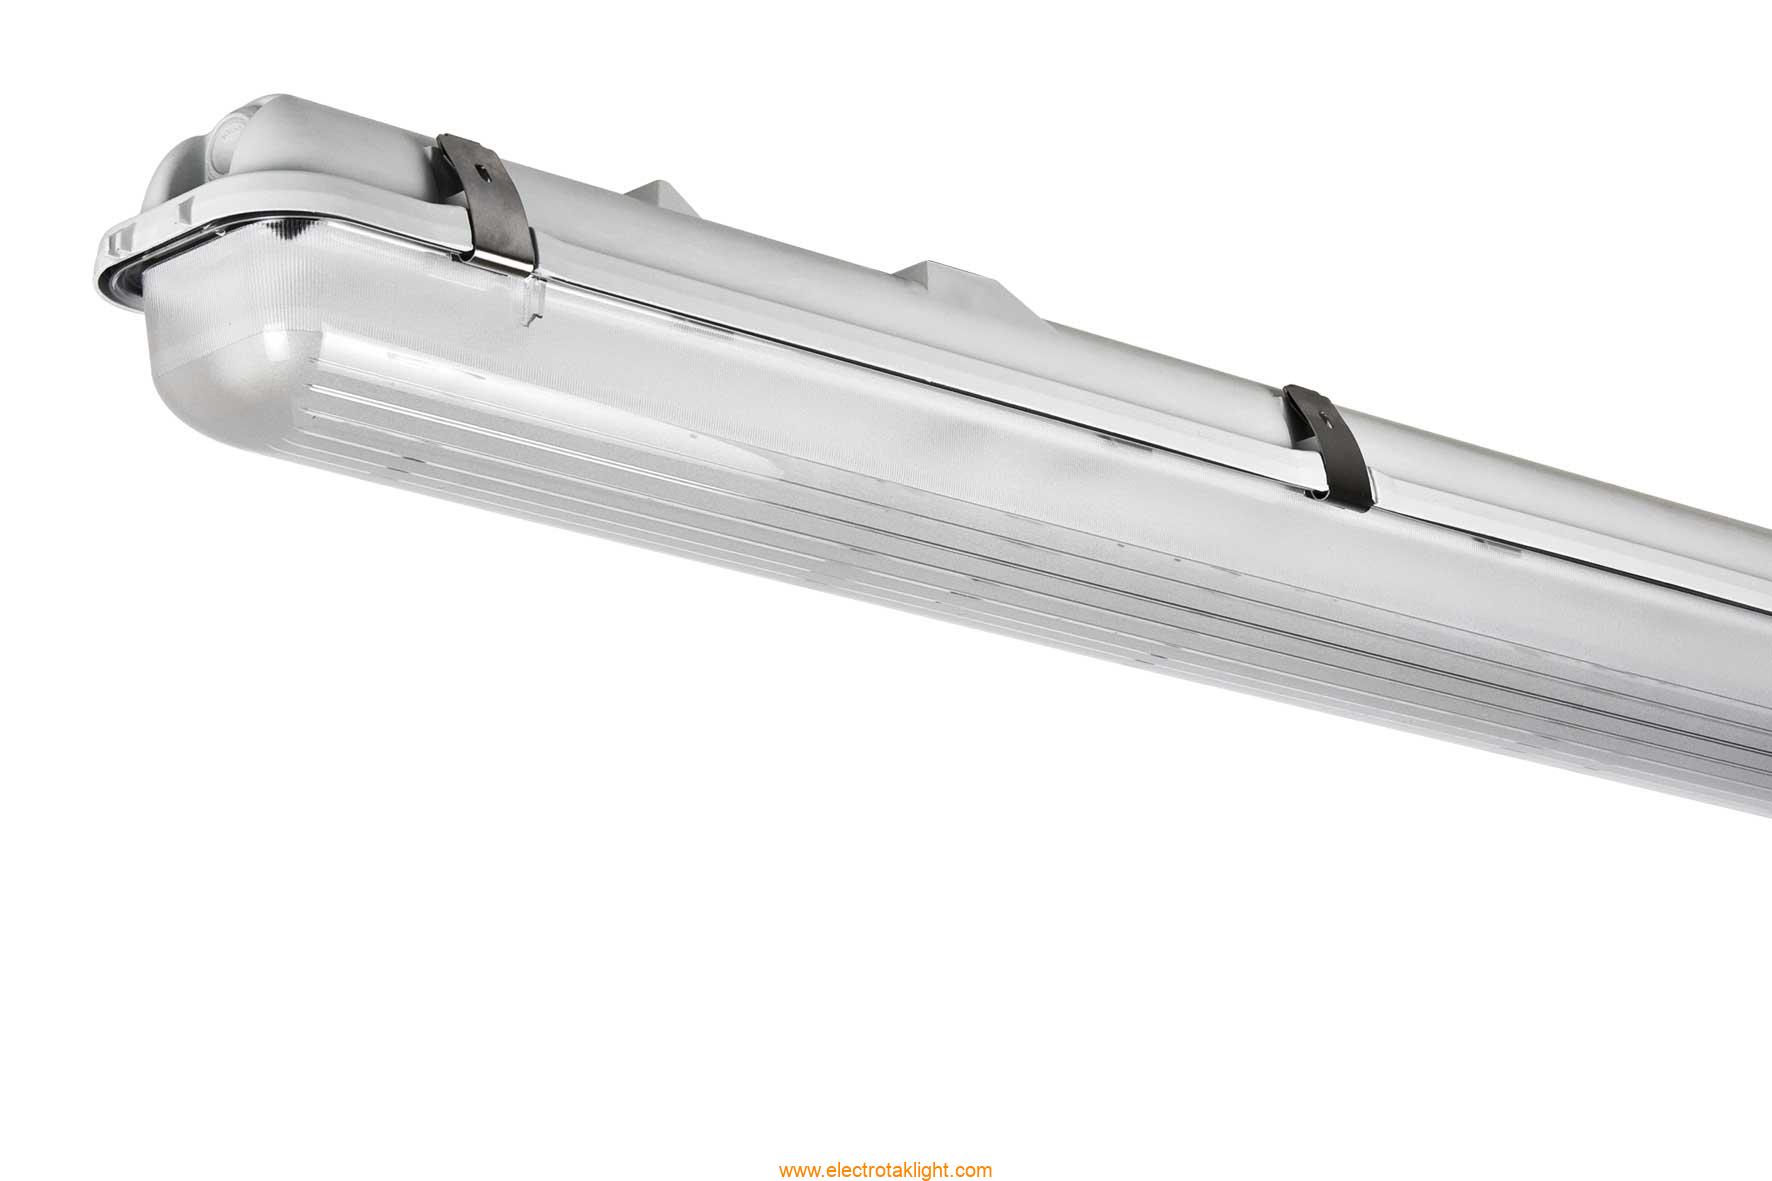 چراغ فلورسنتی صنعتی 28 وات ضد نم و غبار مازی نور مدل سیلا M452228